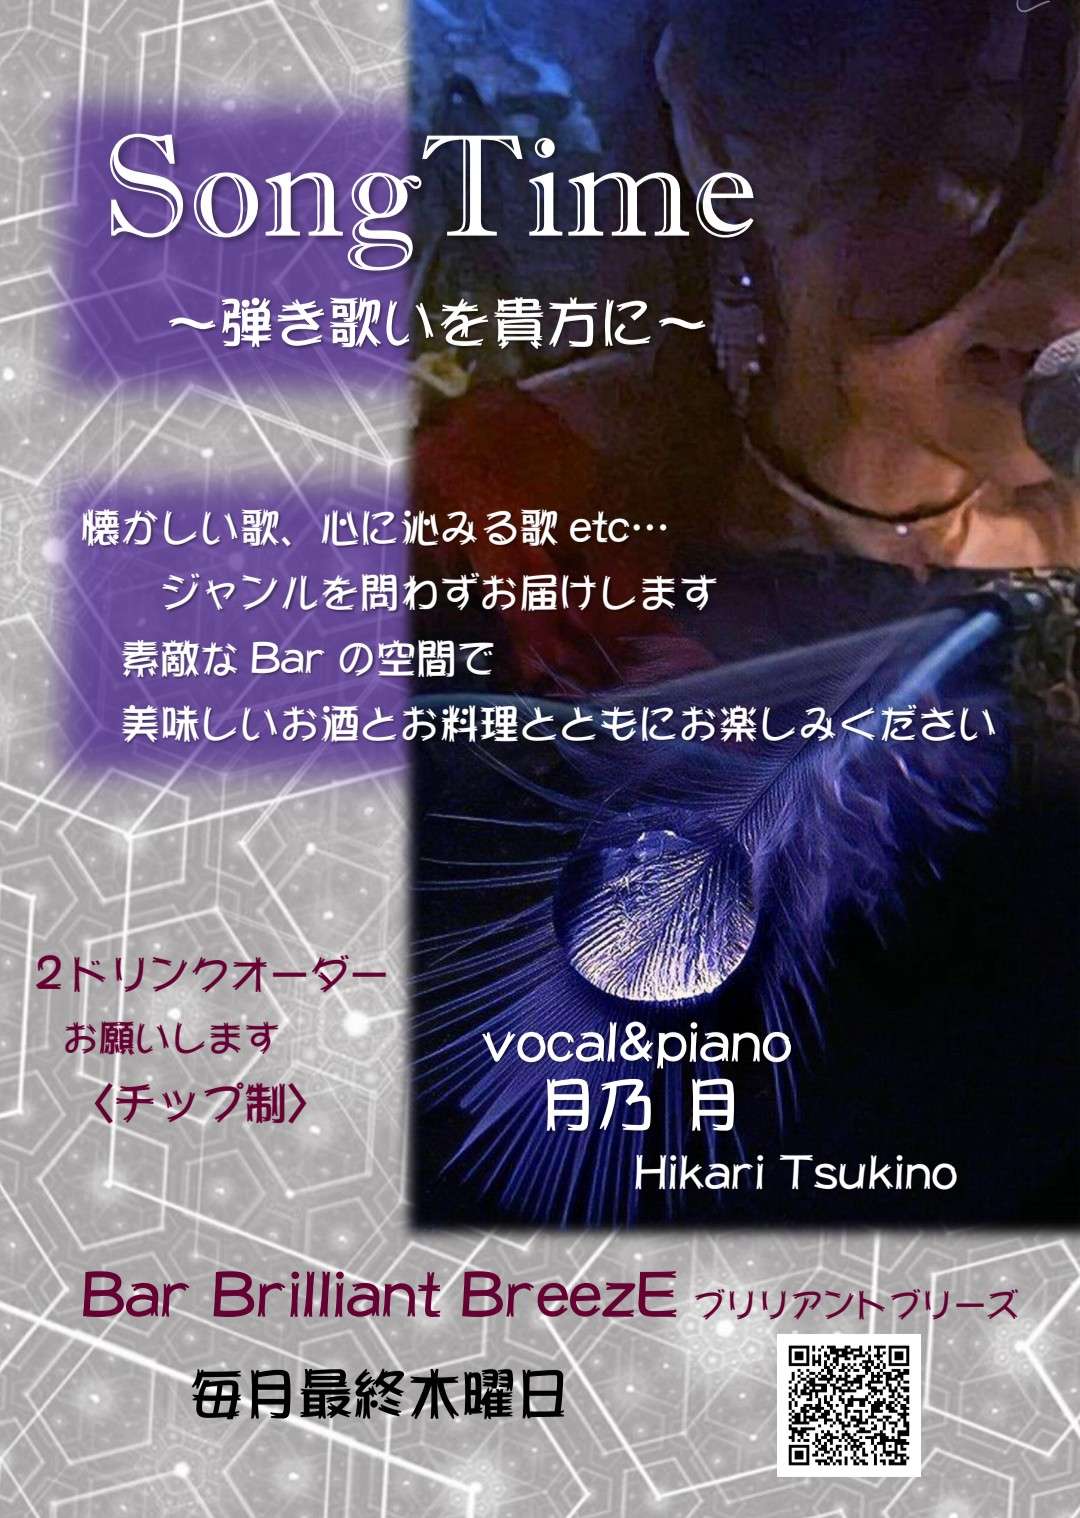 大阪生野区のBAR／Brilliant BreezE1月27日月乃 月弾き歌いLIVE延期のお知らせ！